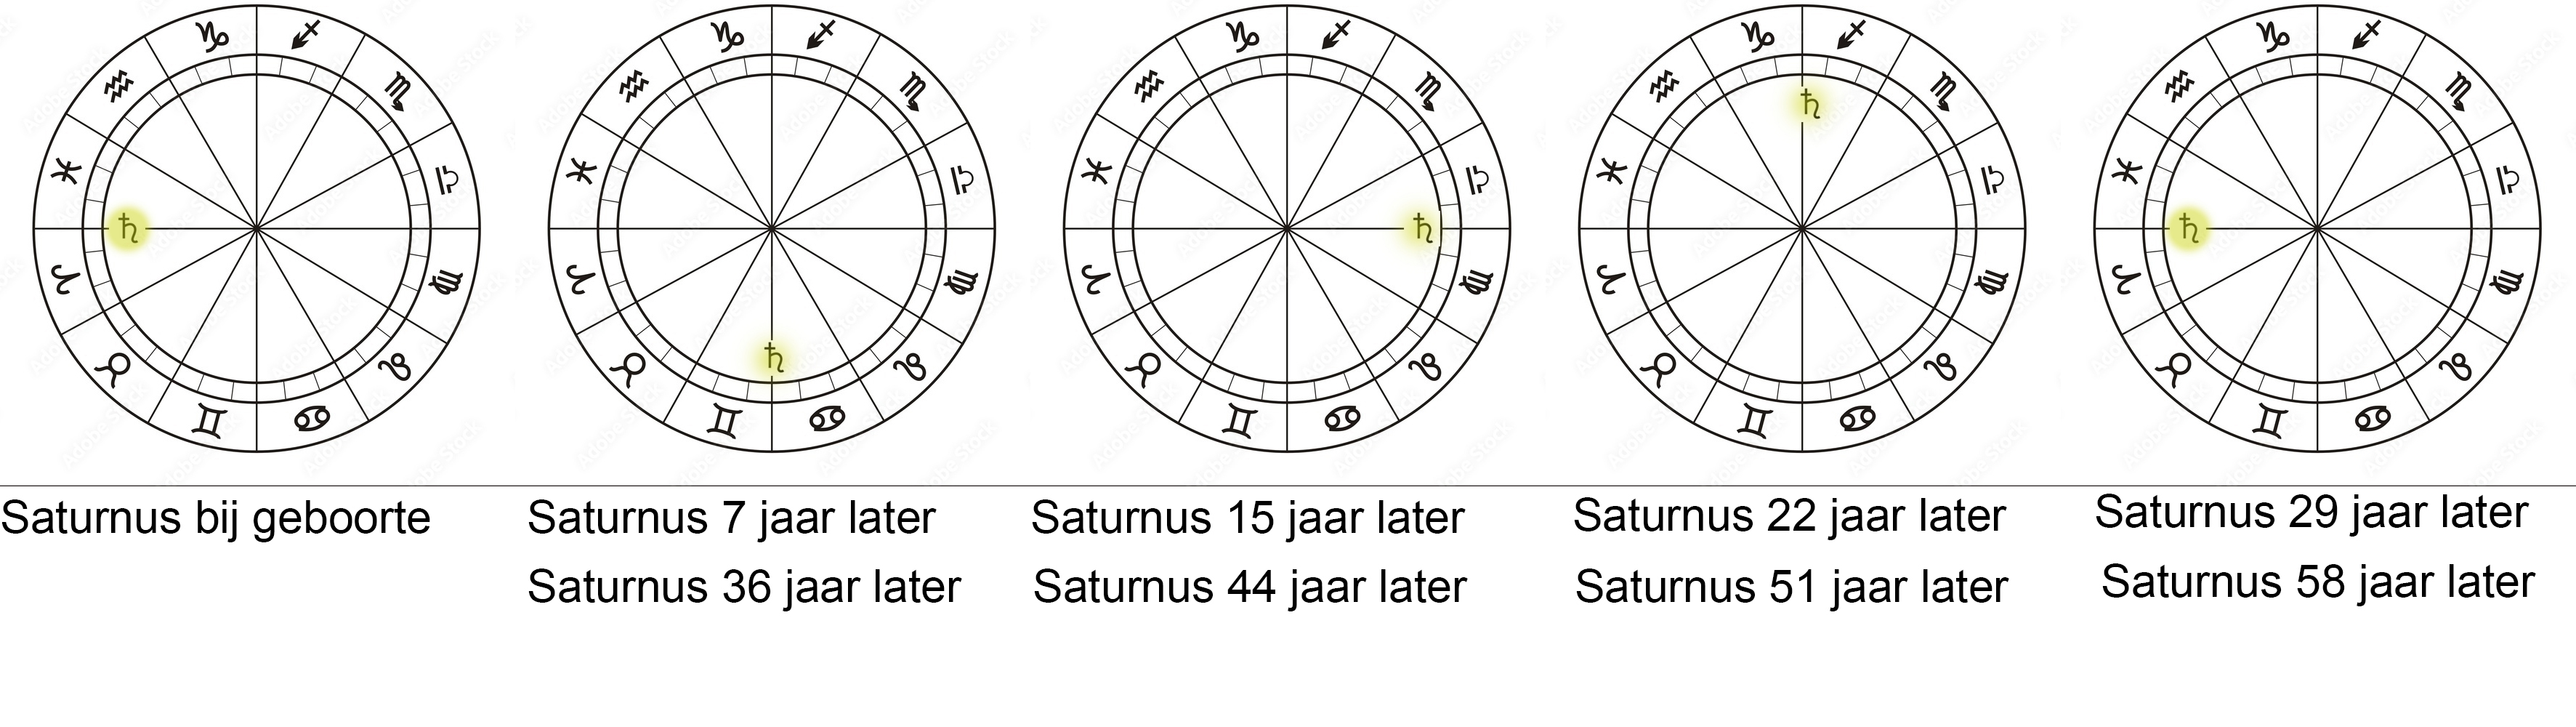 Saturnus cyclus groot